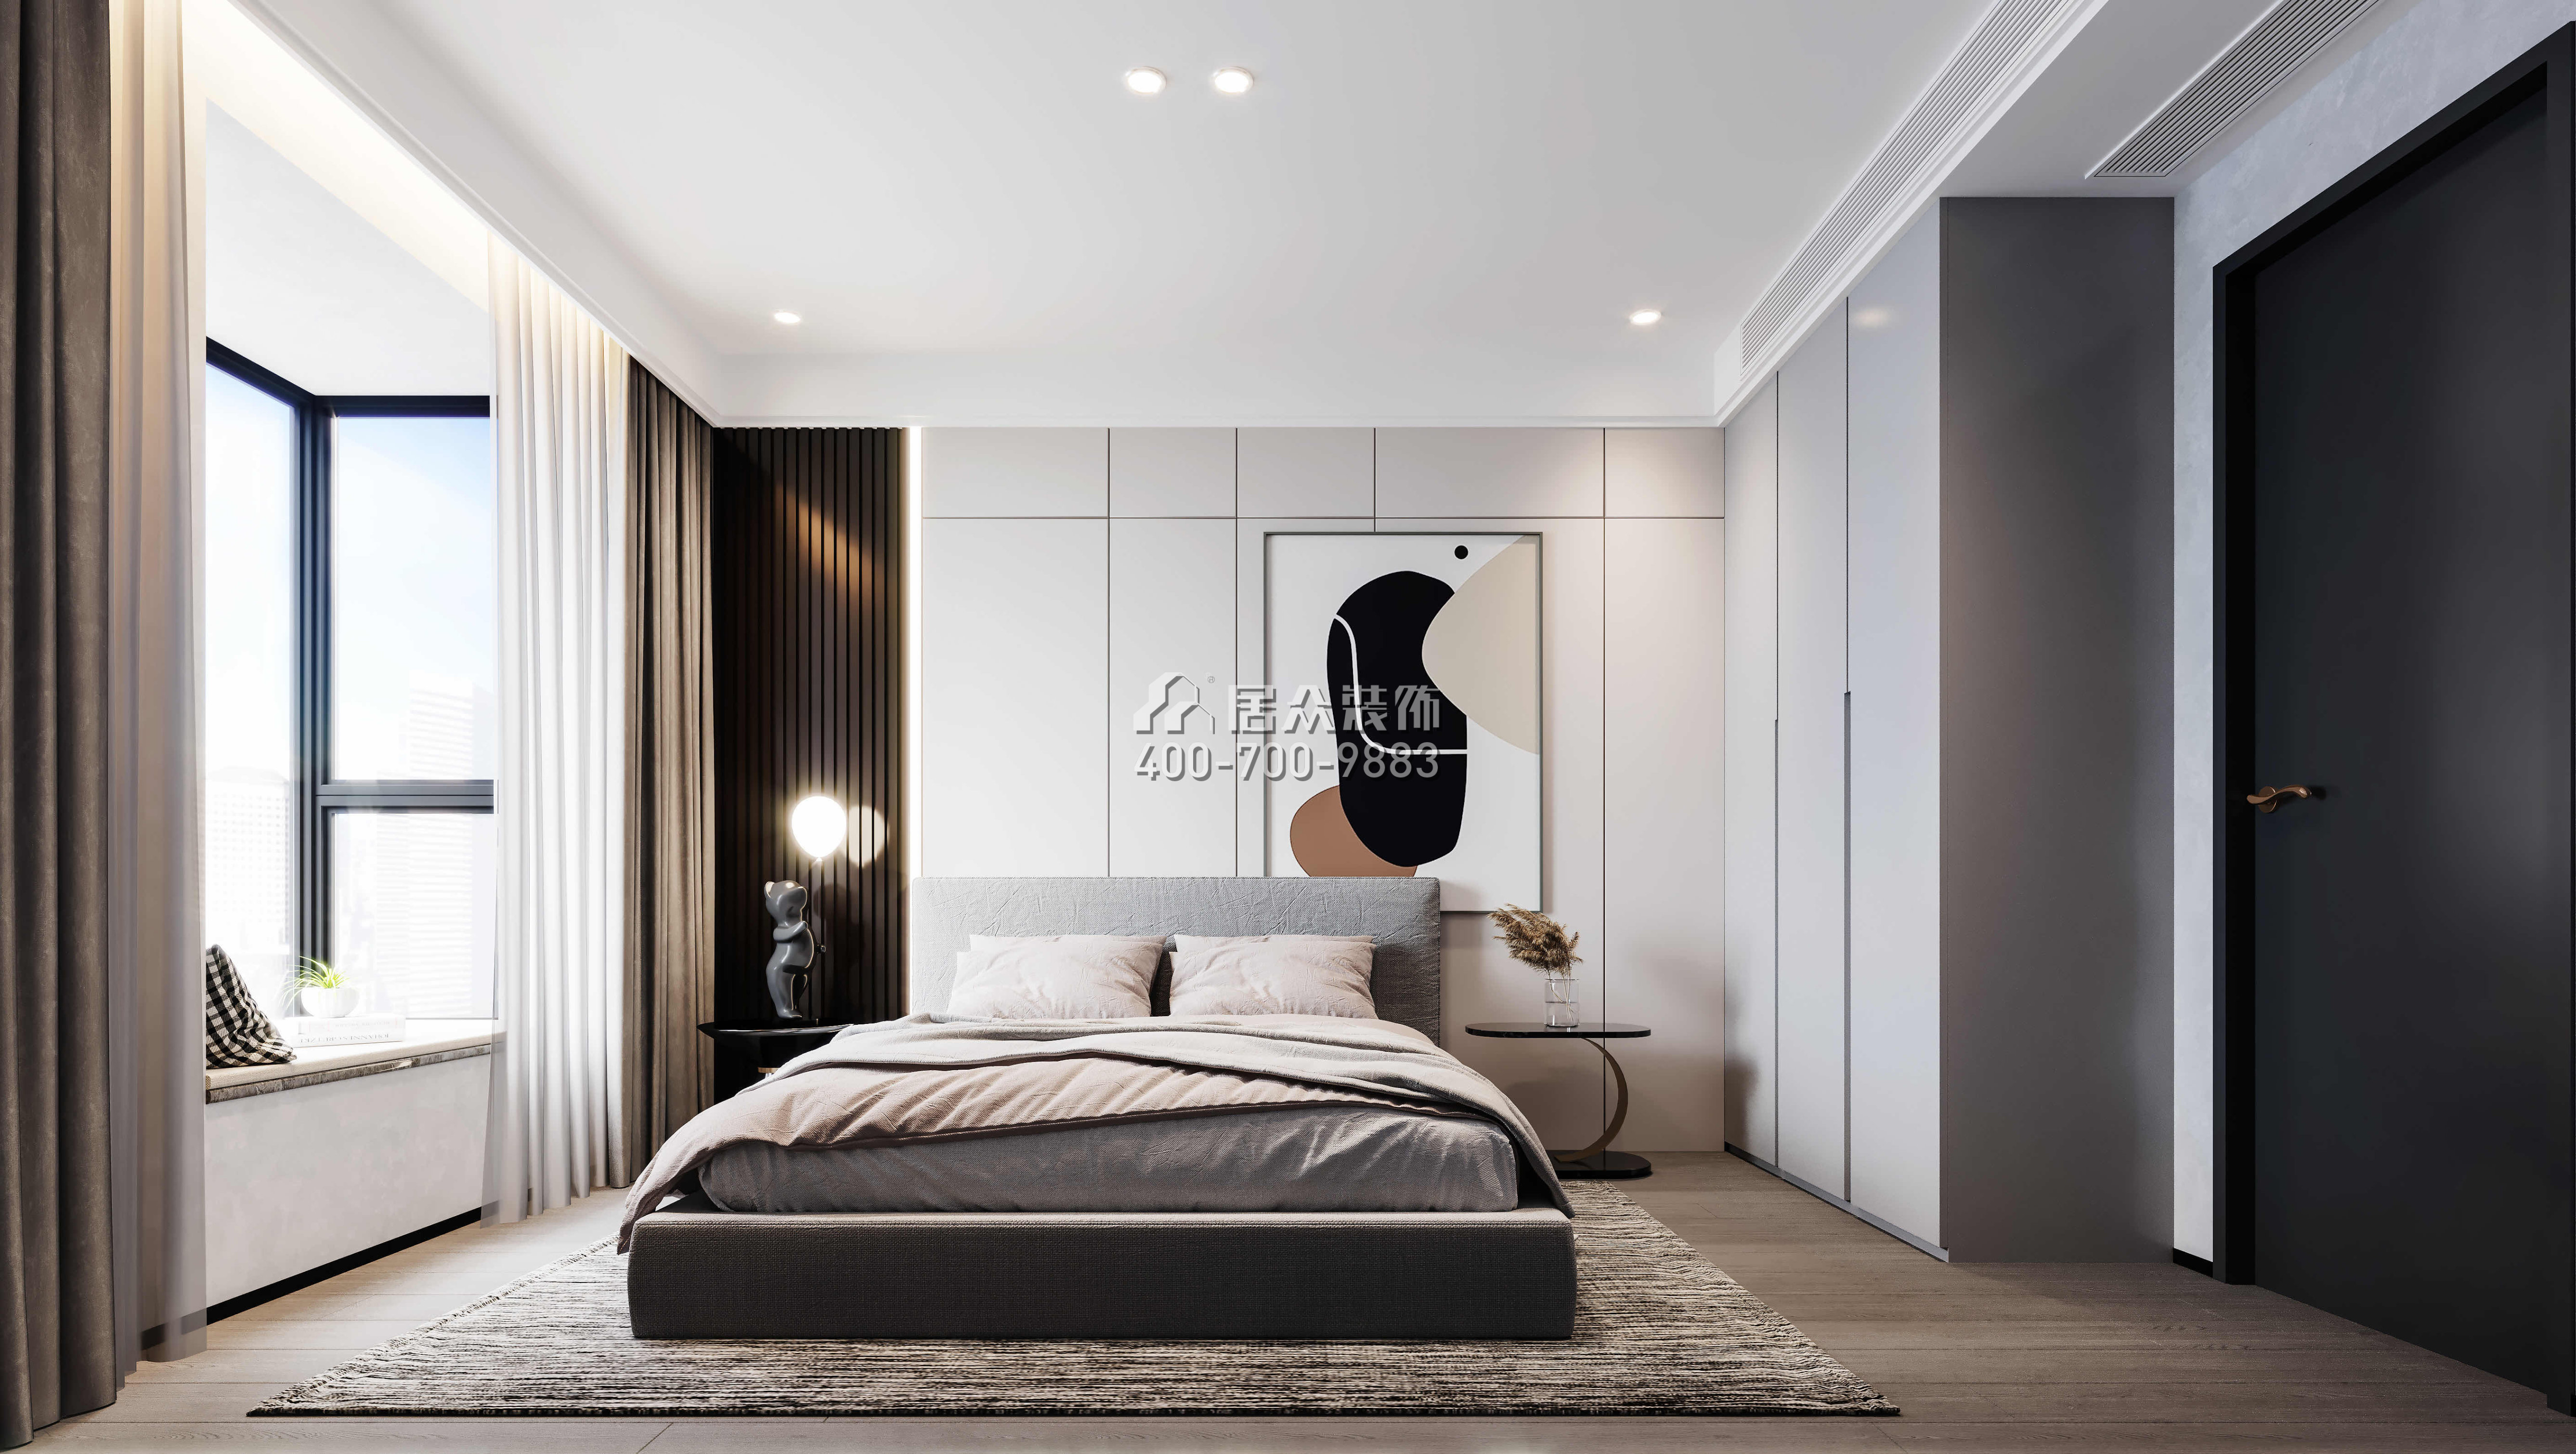 发展兴苑270平方米现代简约风格平层户型卧室装修效果图